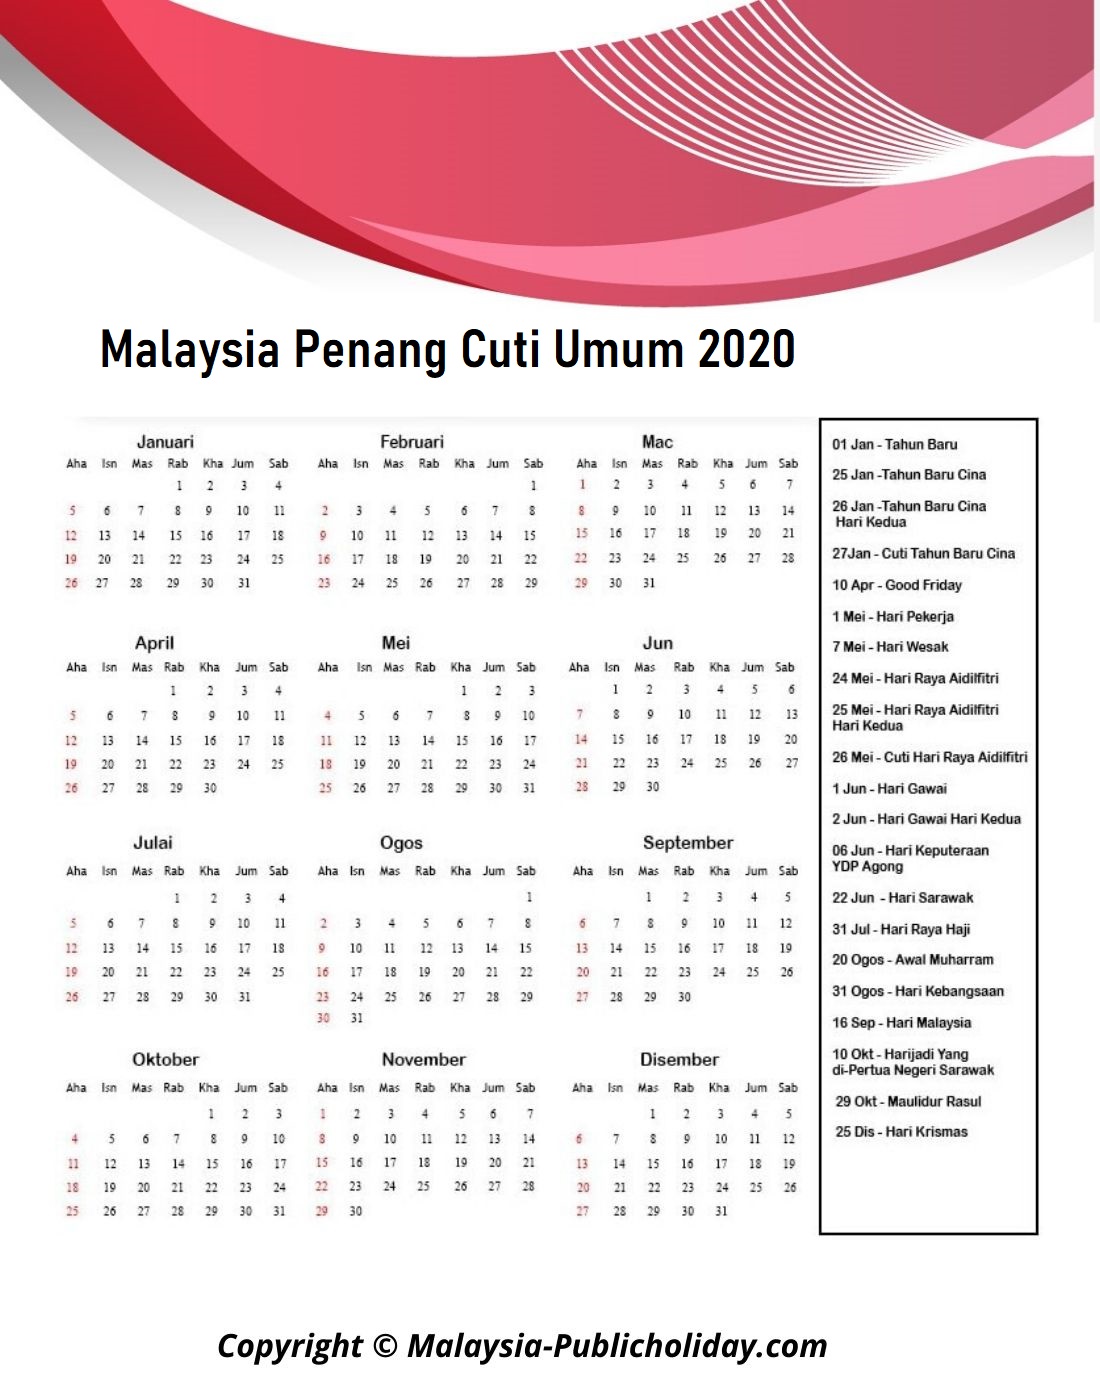 Kalendar Penang 2020 Malaysia